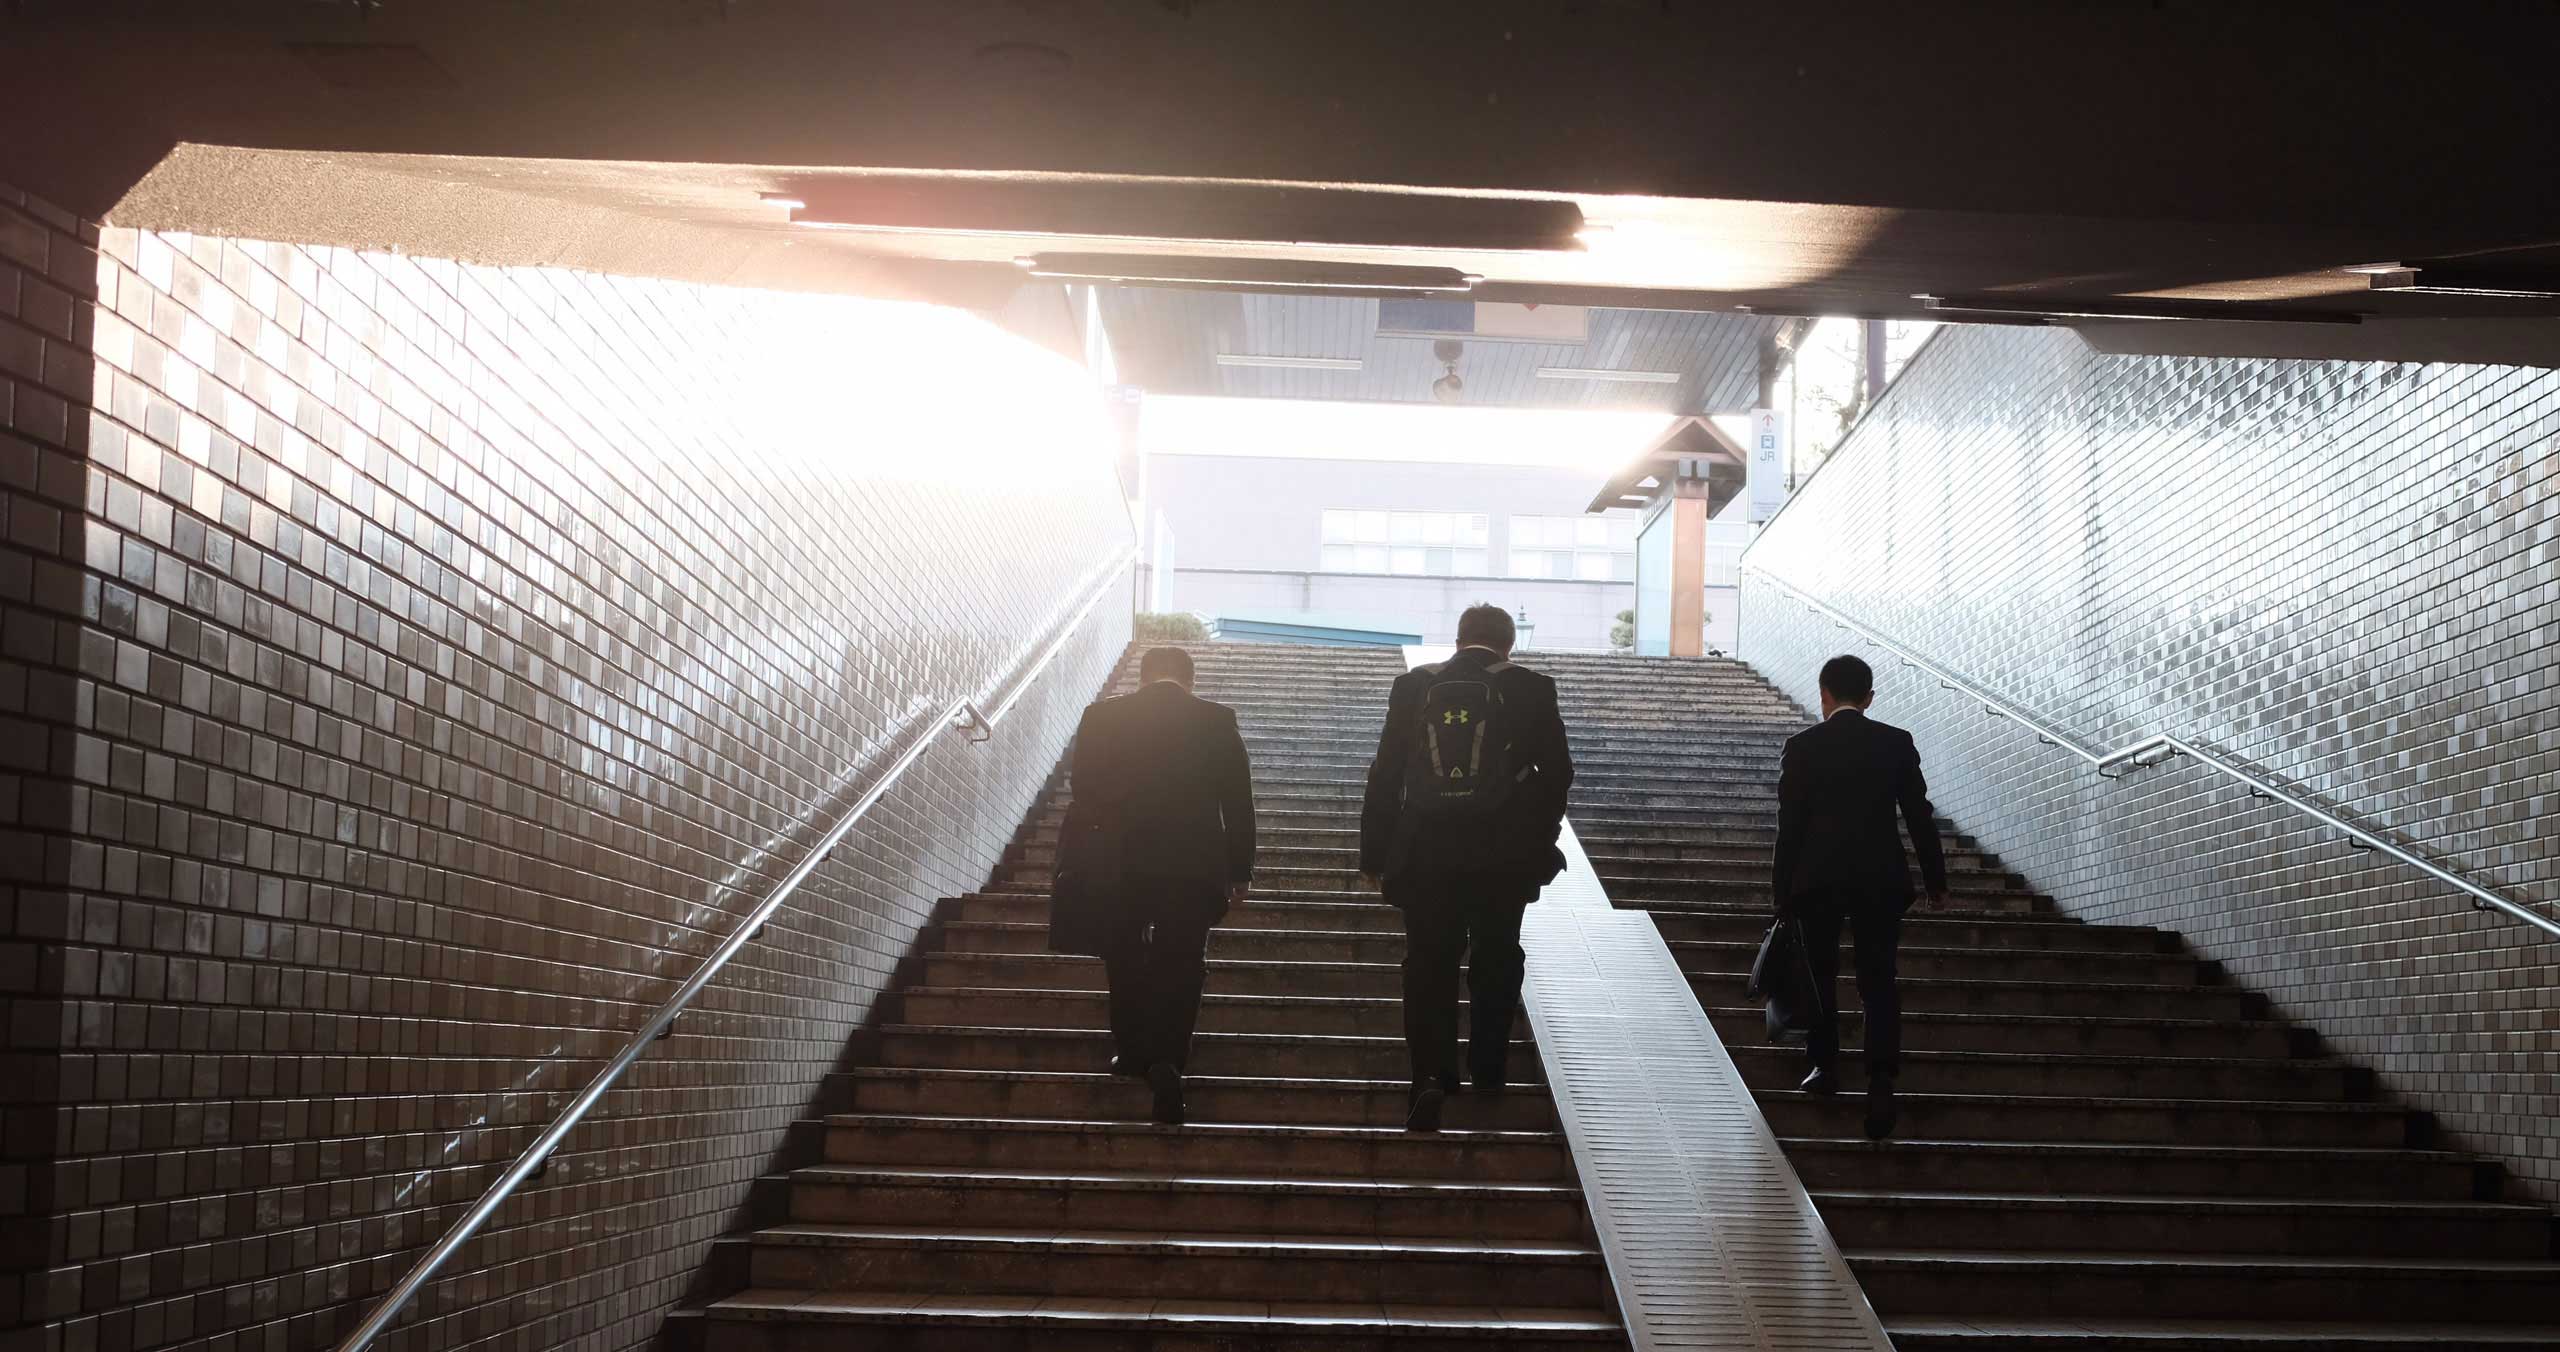 Kolme liikemiestä nousee metrokäytävän portaita pitkin kohti päivänvaloa.